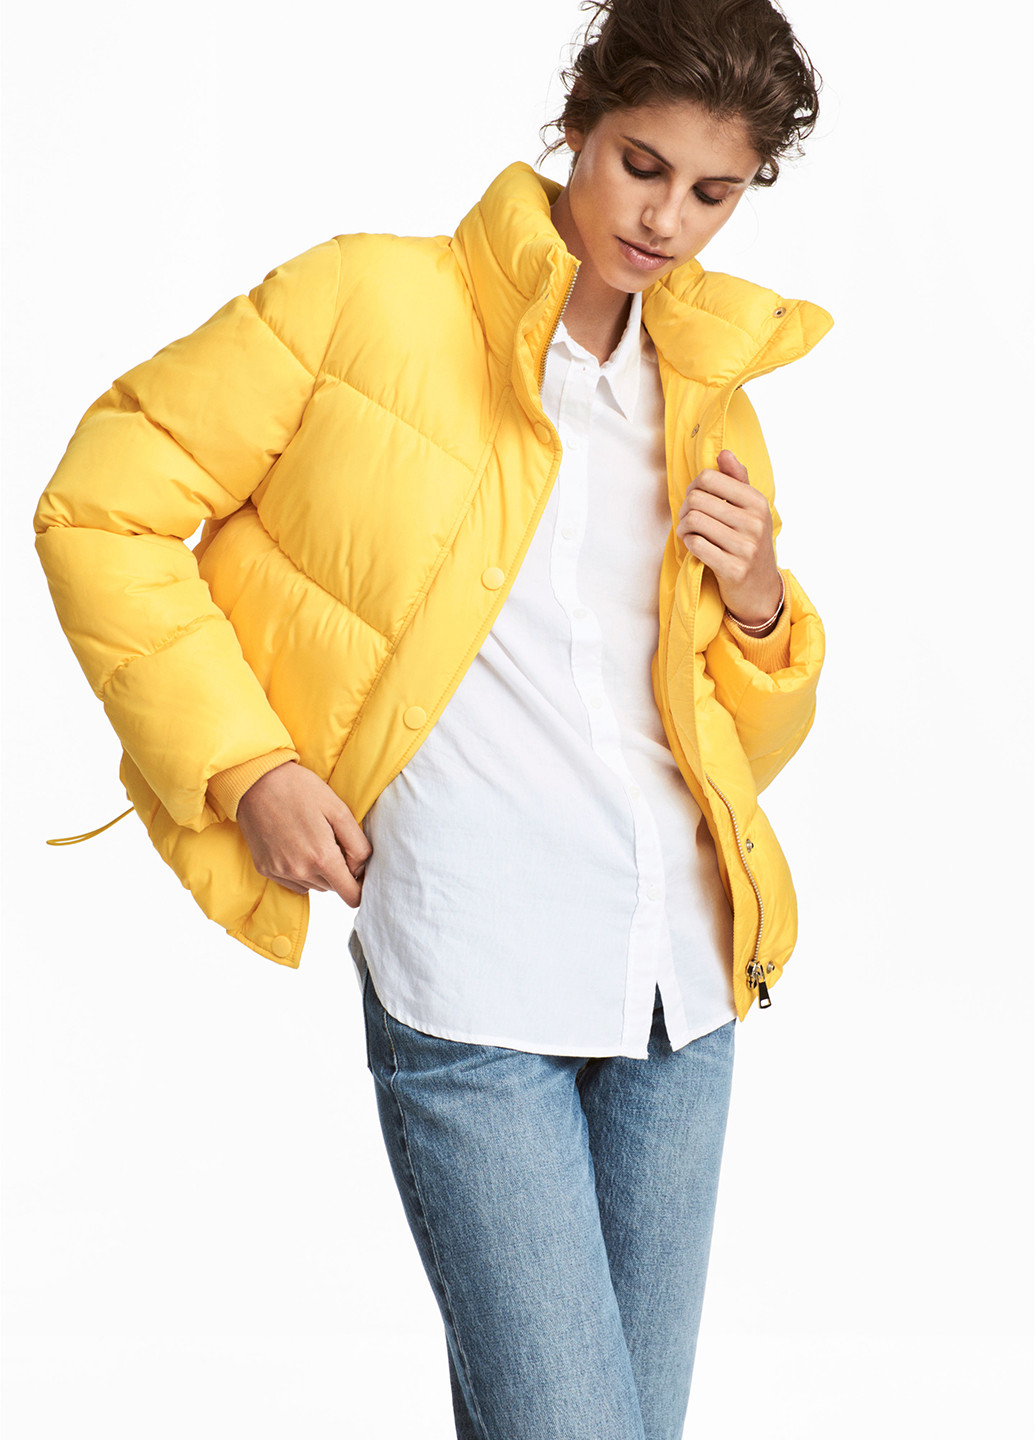 Желтая зимняя куртка H&M